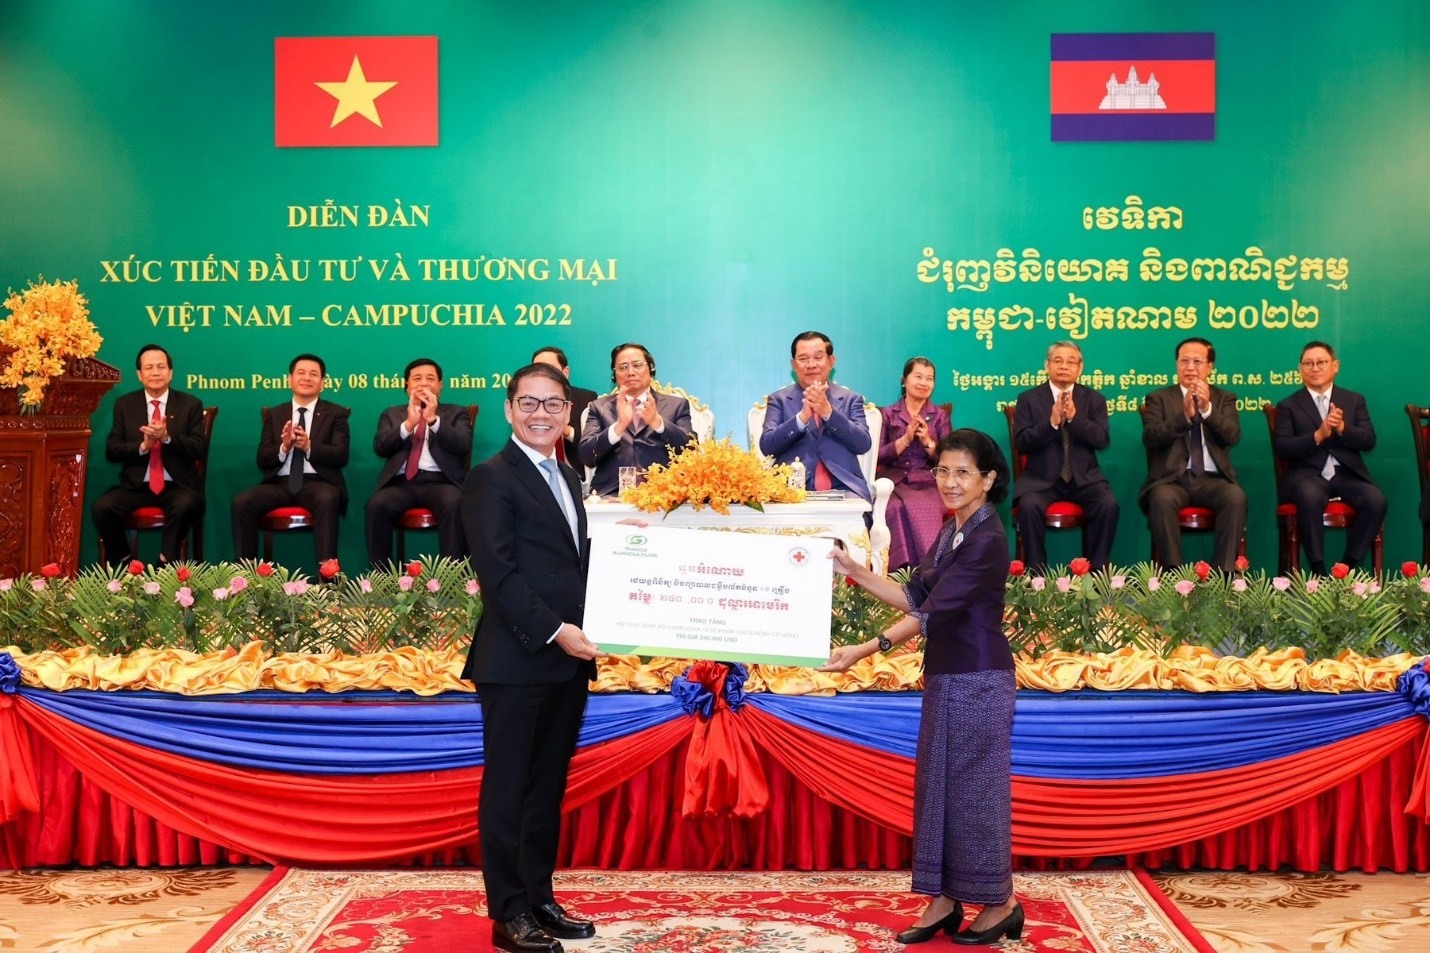 Ông Trần Bá Dương - Chủ tịch HĐQT THACO trao bảng tài trợ 15 xe khám chữa bệnh cơ động trị giá 240.000 USD cho Hội chữ thập đỏ Campuchia